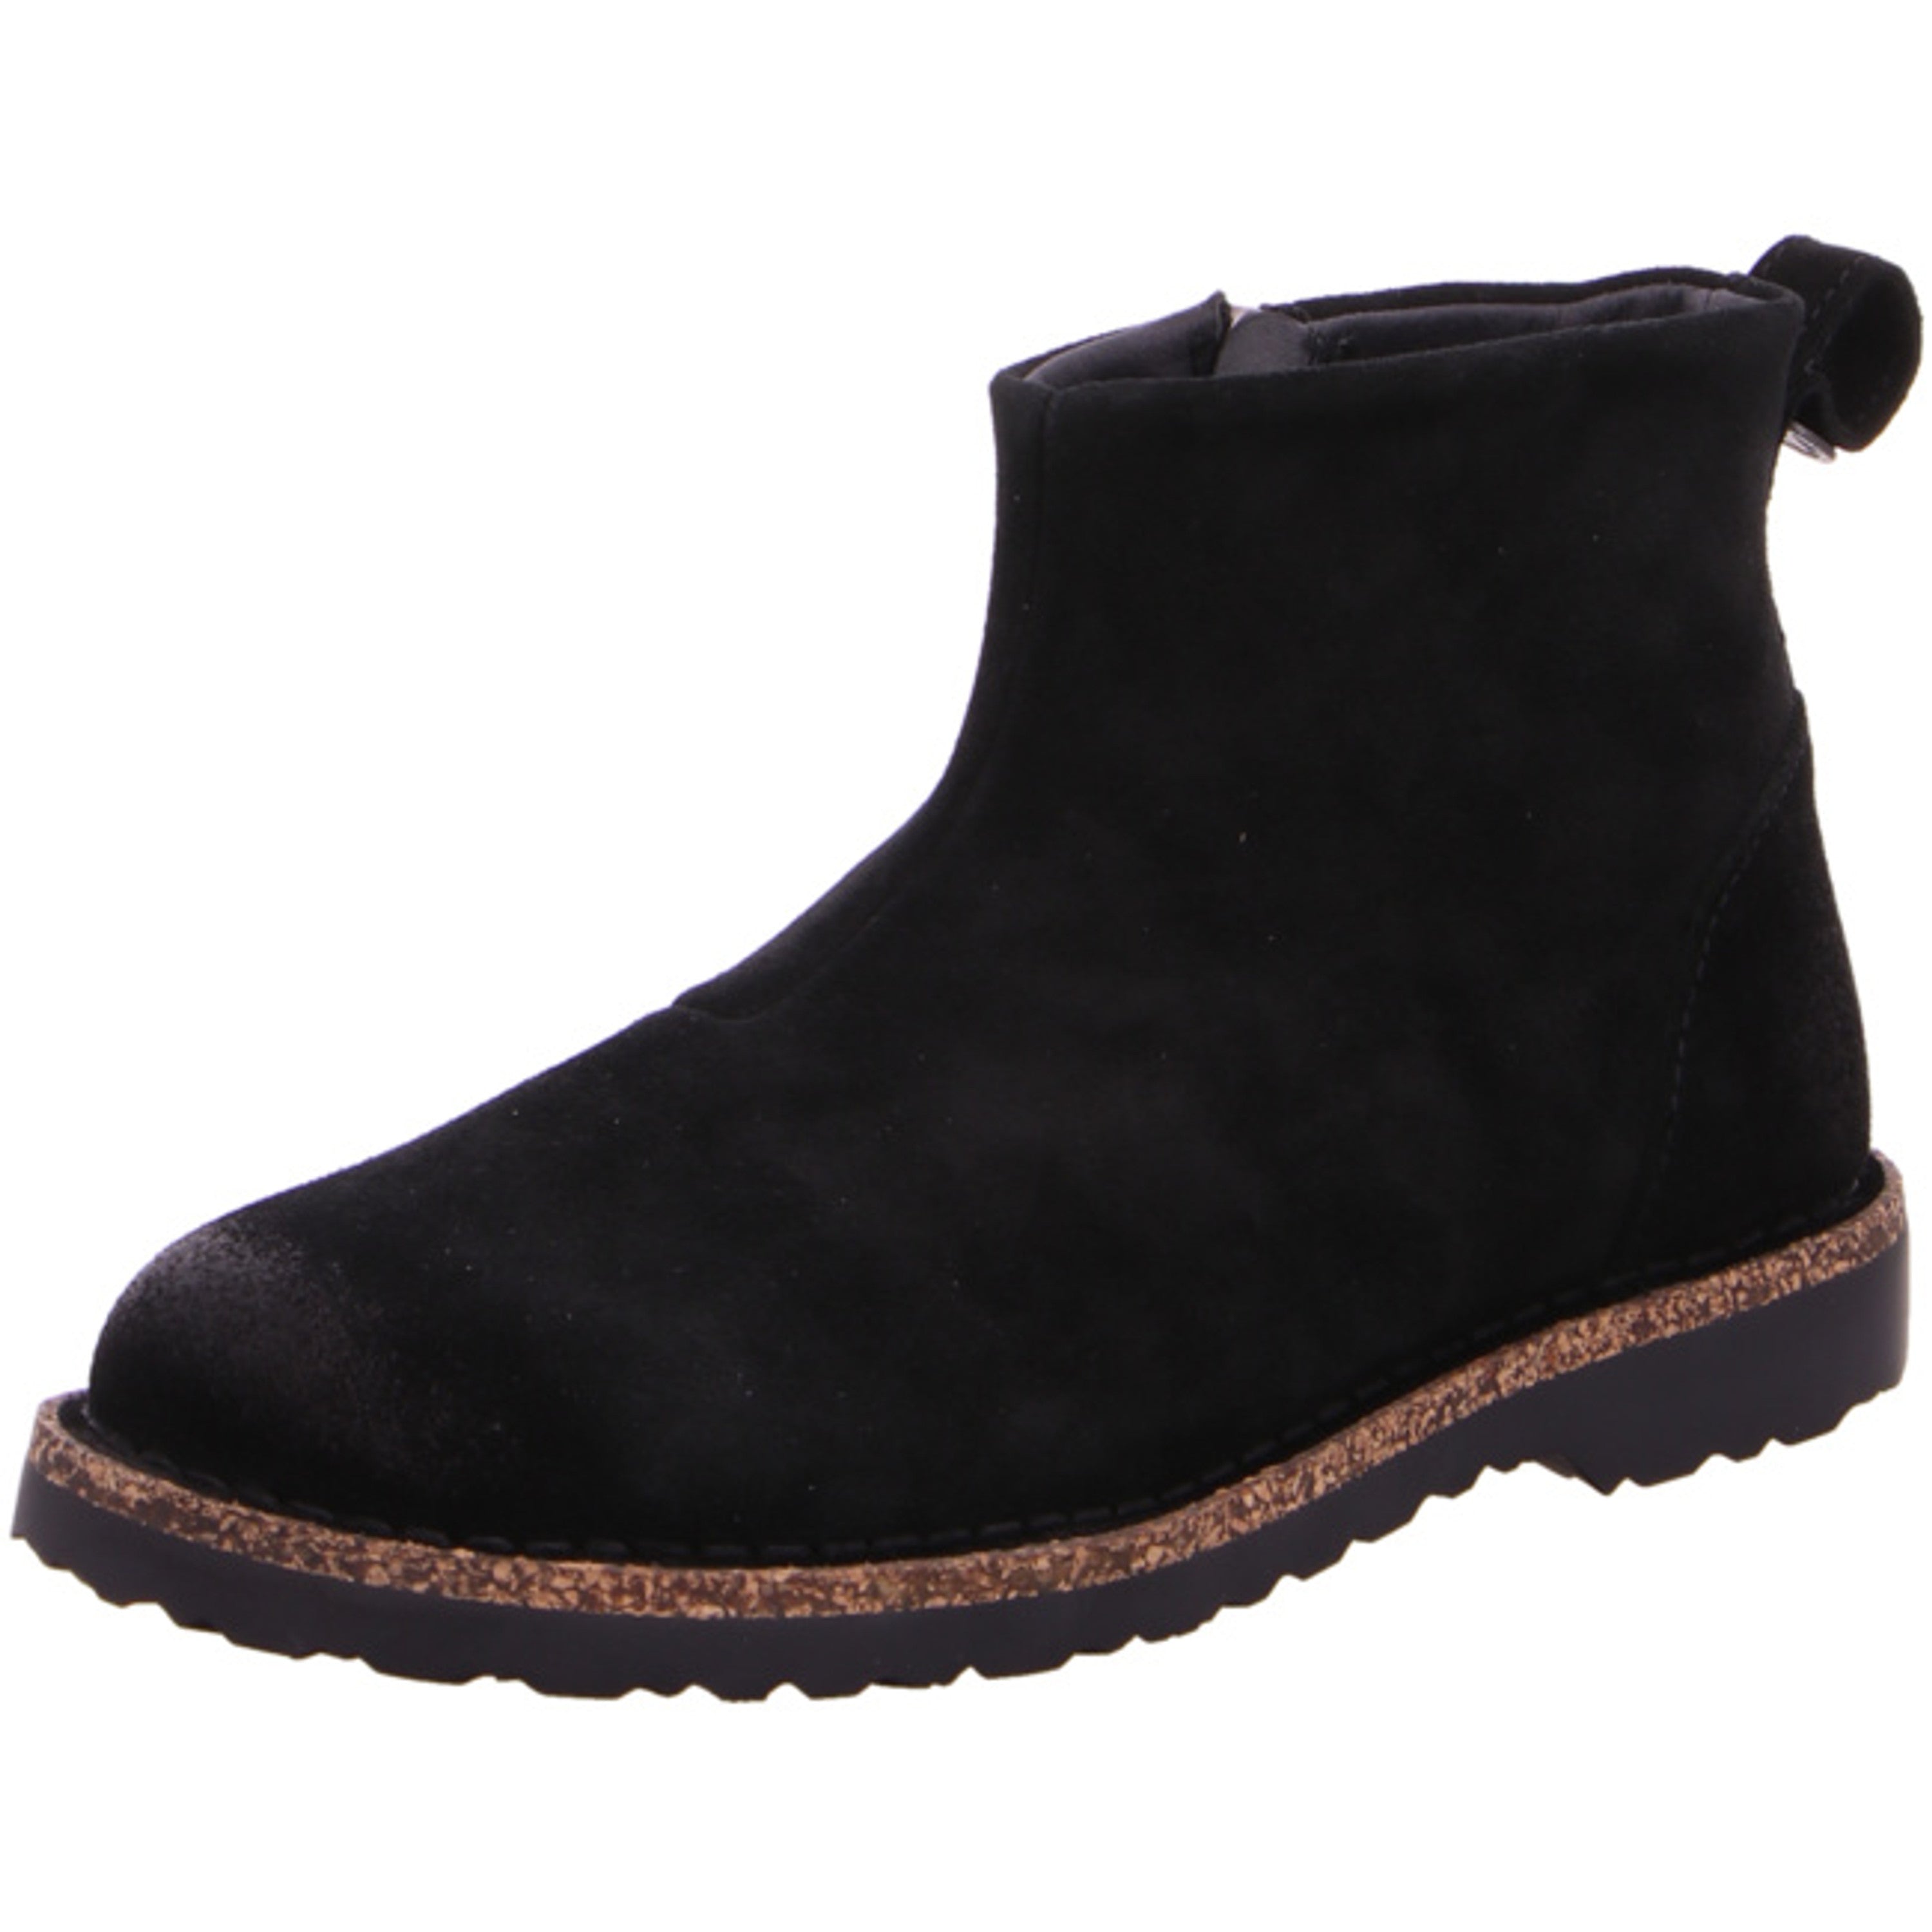 Birkenstock Melrose Boots regular Black Suede Leather Shoes Ankle Sandals Slippers - Bartel-Shop